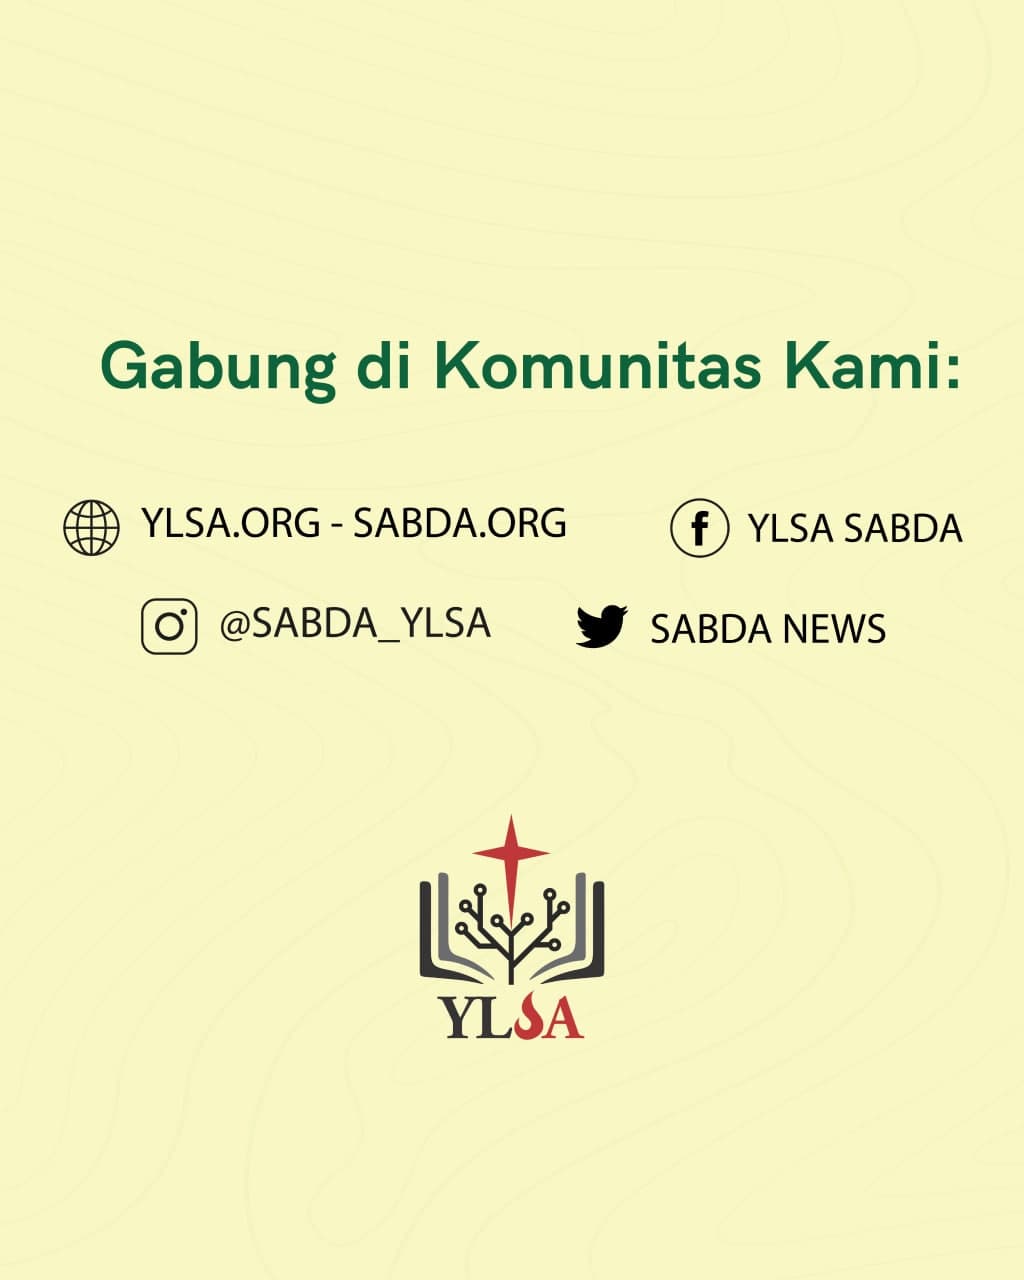 Dapatkan informasi beragam dari pelayanan YLSA dengan bergabung di komunitas YLSA.